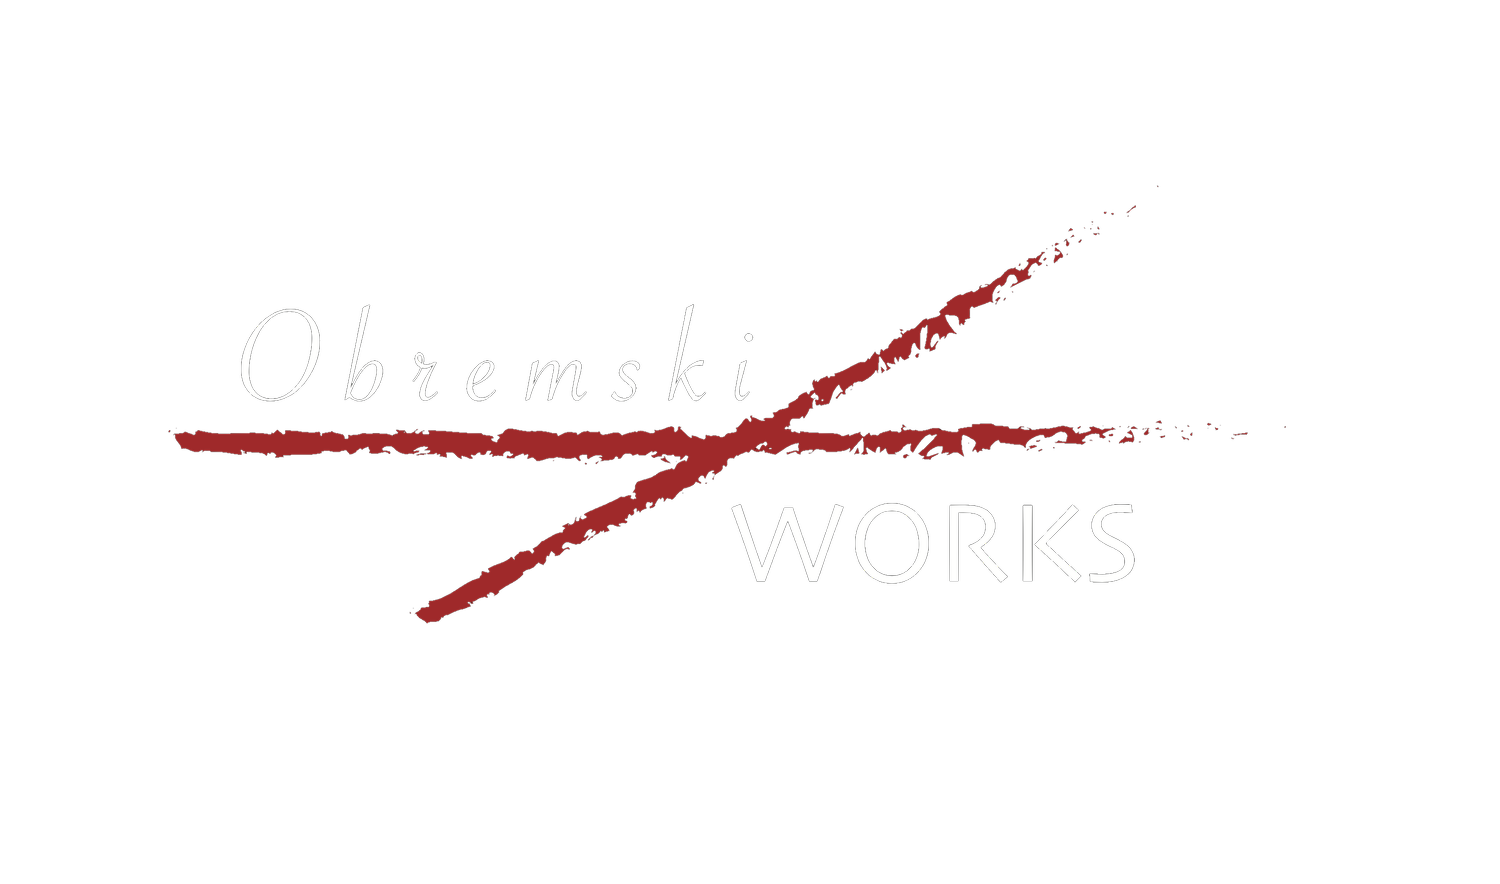 Obremski/Works